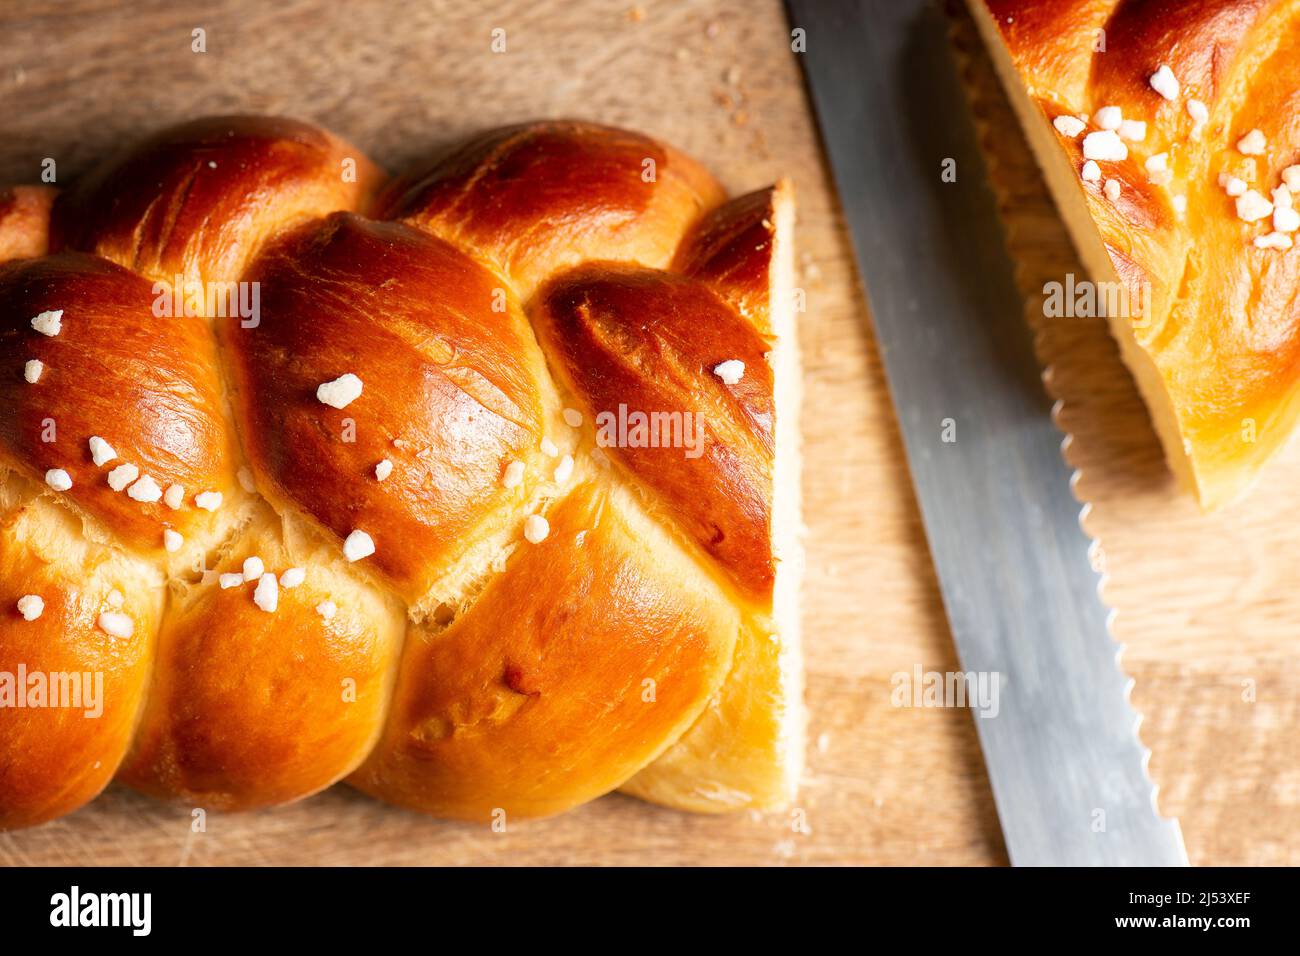 Schönes, goldenes gebackenes Brot mit drei Zopf und Hagel-Zucker. Challah ist ein besonderes Brot aschkenasischer jüdischer Herkunft, in der Regel geflochten und typi Stockfoto